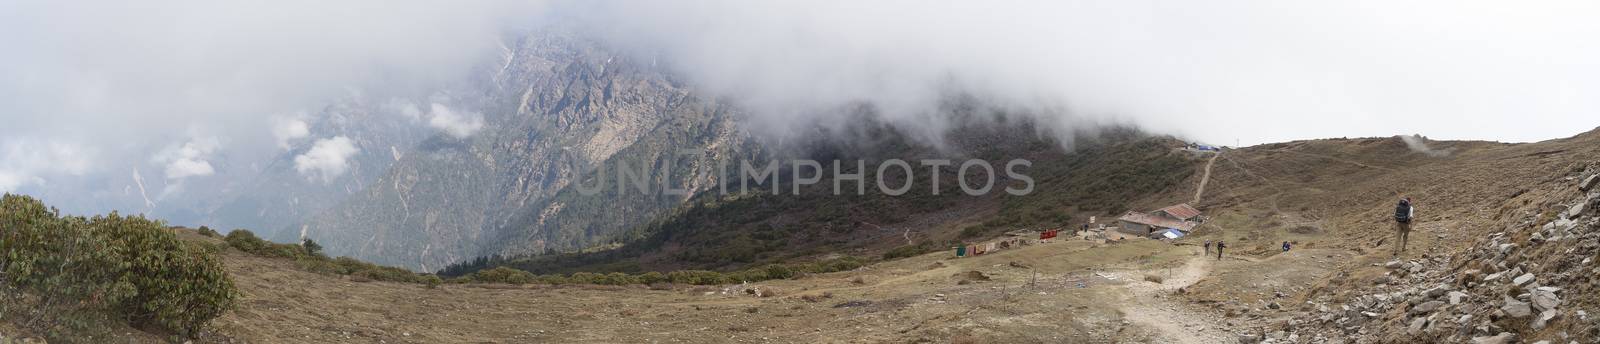 Nepal trek in nature reserve valley by javax